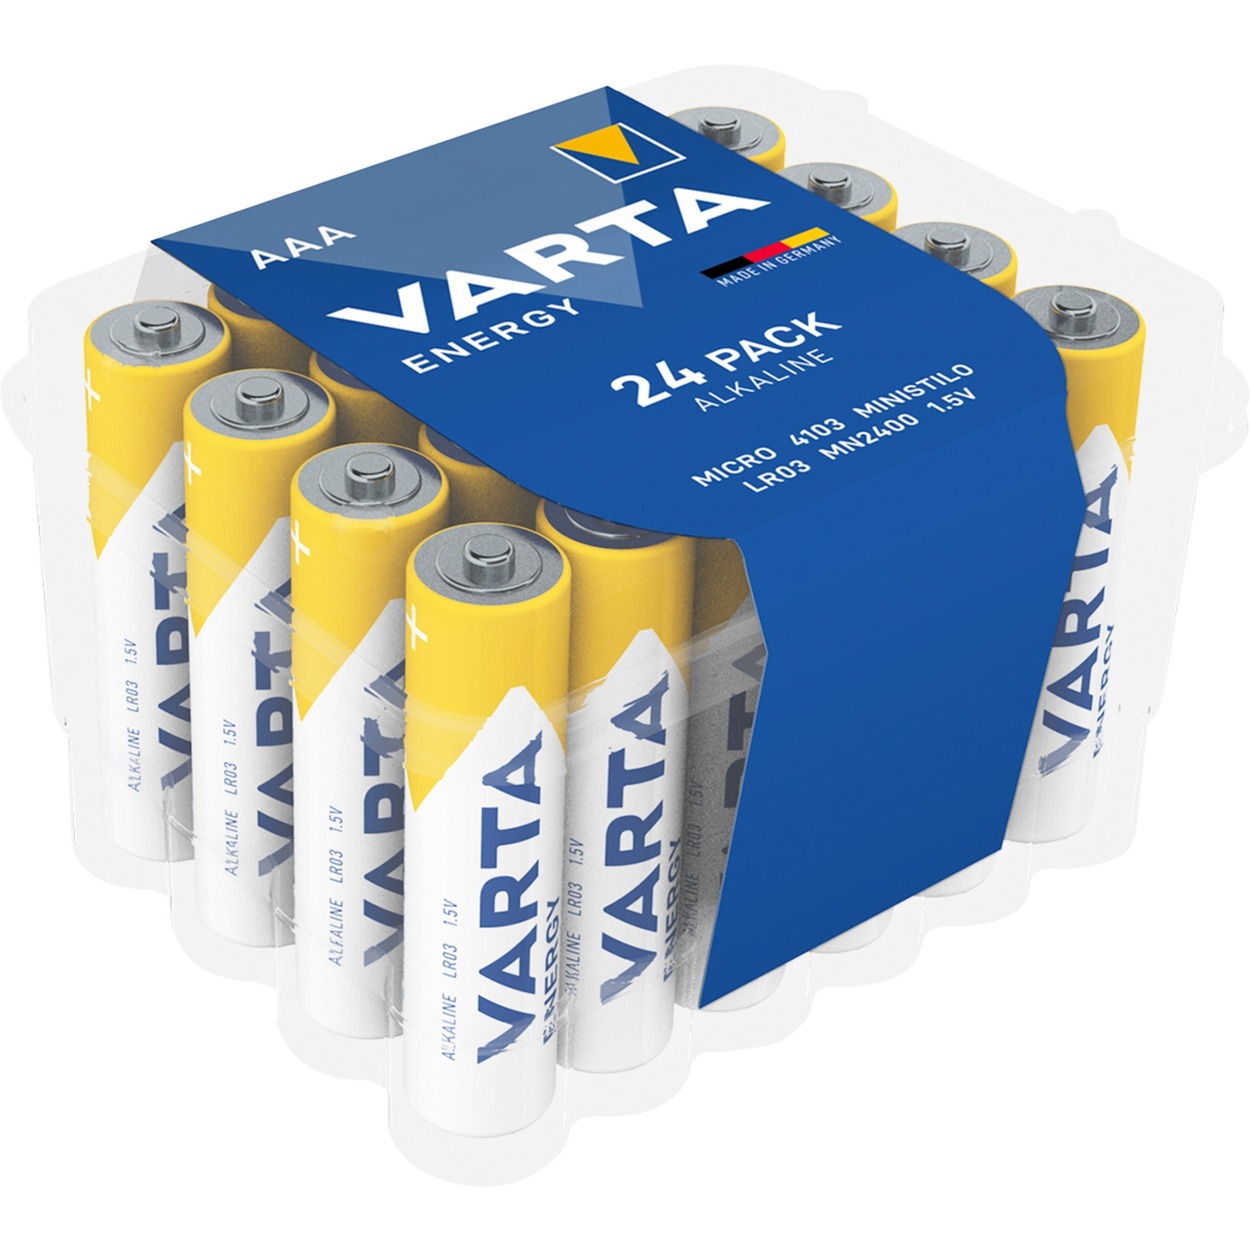 Image of Alternate - Alkaline (Box) AAA, Batterie online einkaufen bei Alternate